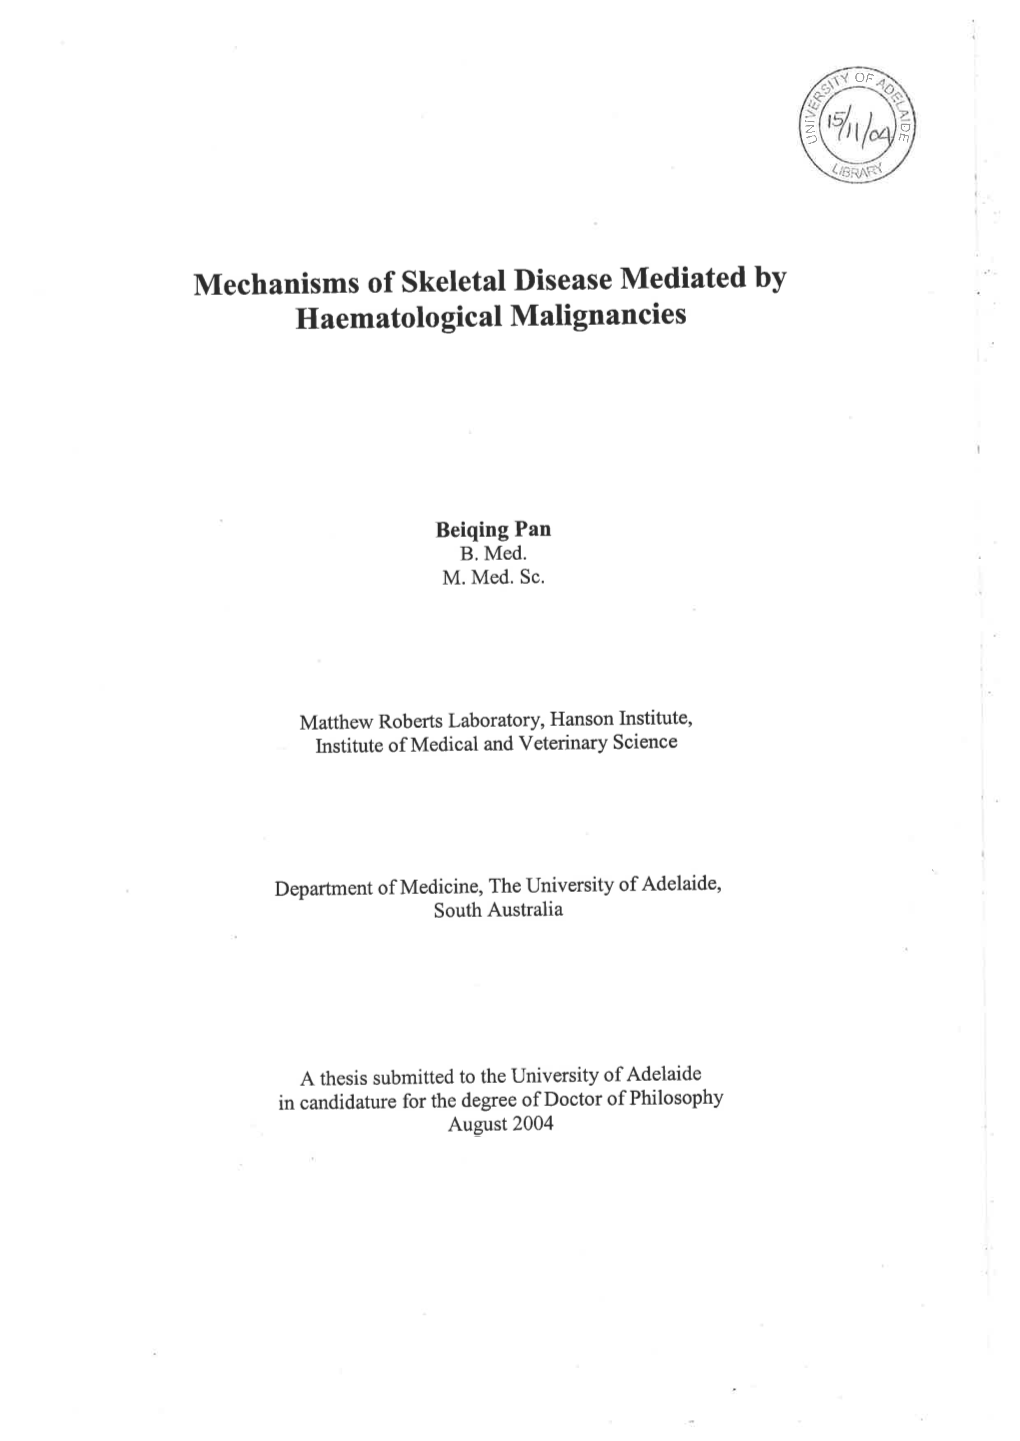 Mechanisms of Skeletal Disease Mediated by Haematological